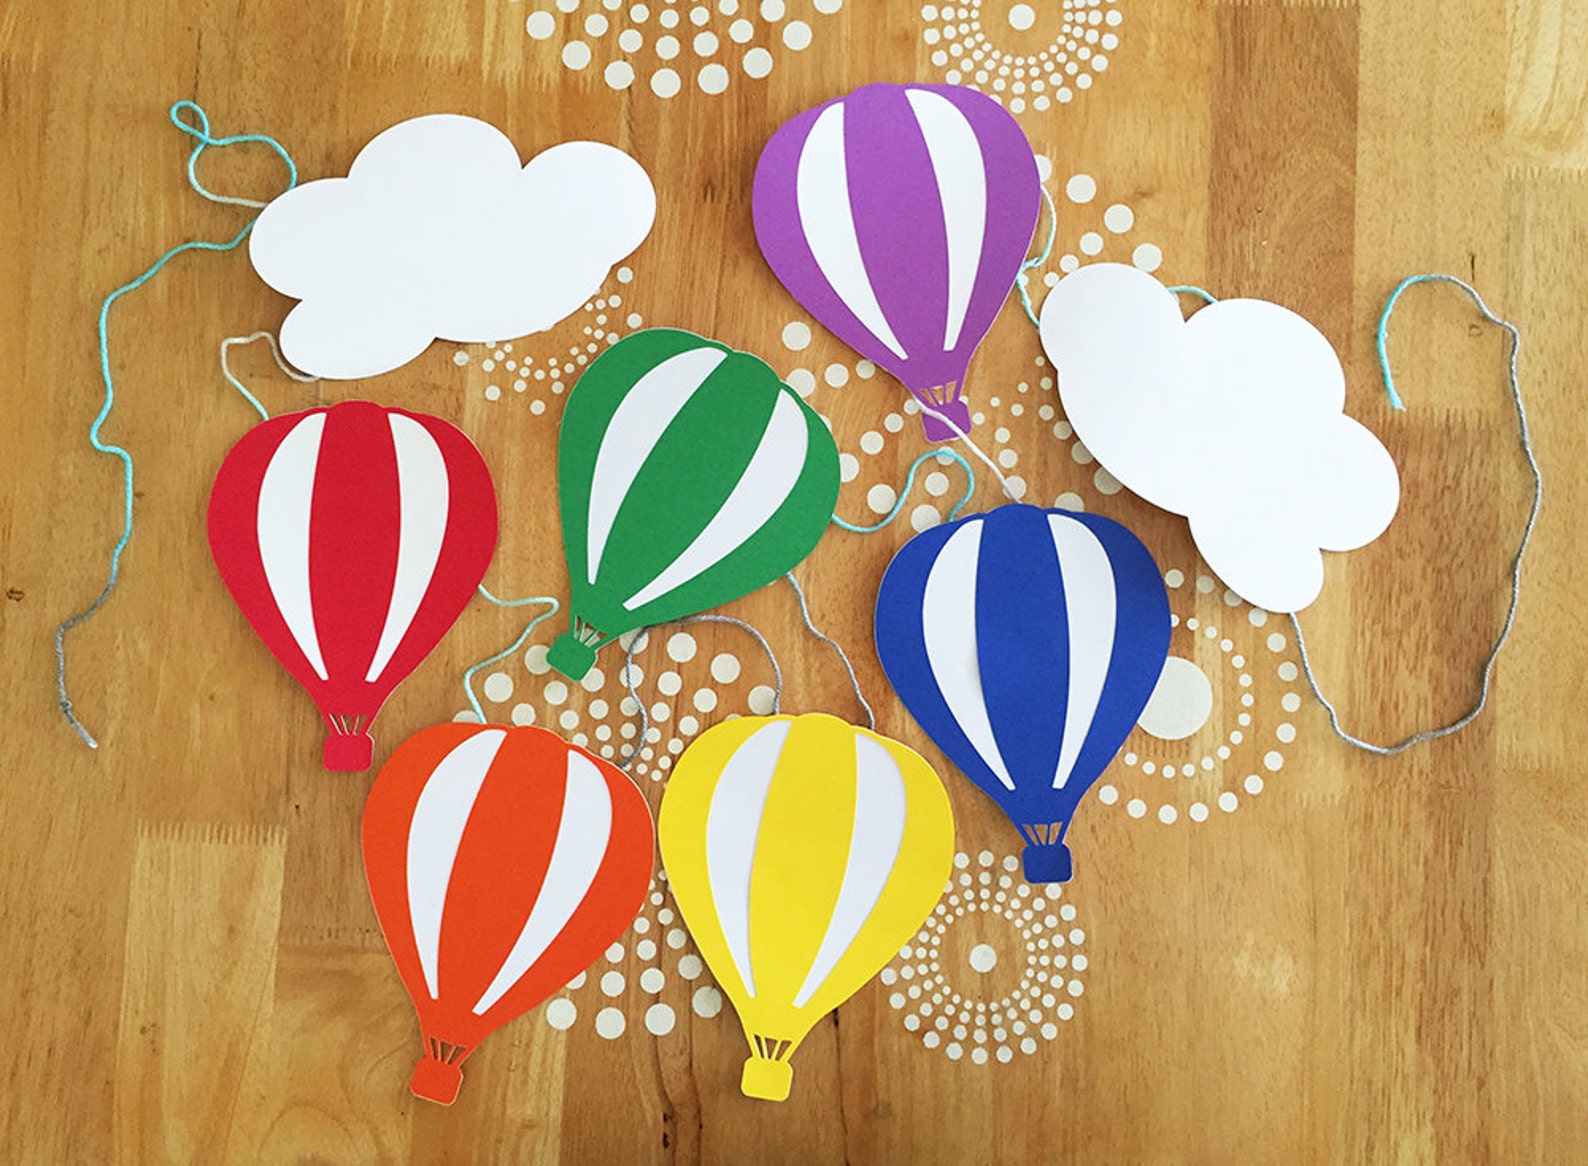 Объемный воздушный шар. Воздушный шар из бумаги. Аппликация воздушные шары. Воздушный шар из цветной бумаги.